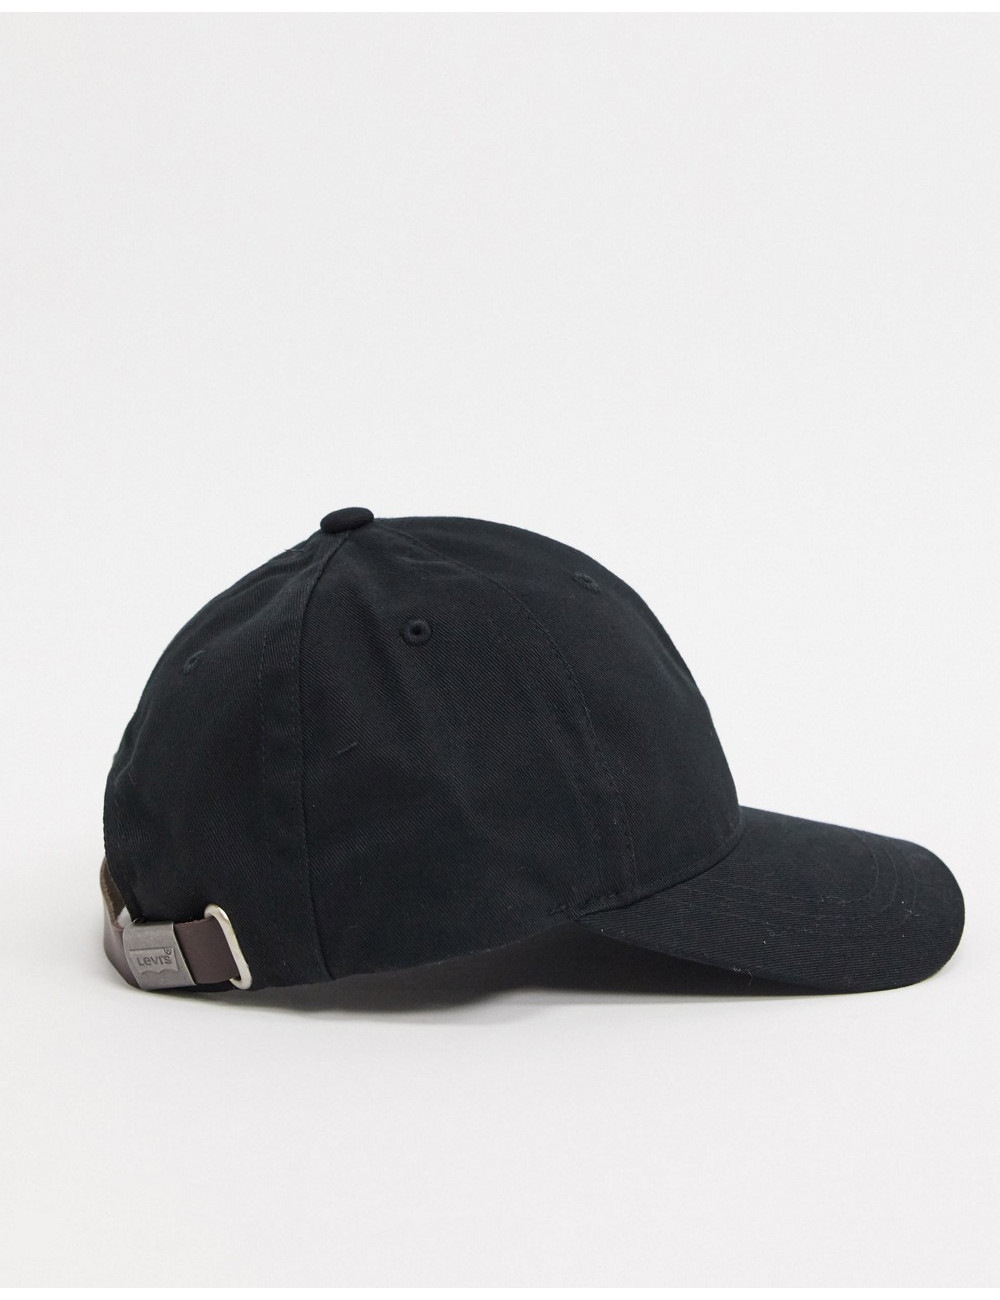 Levi's red tab cap in black